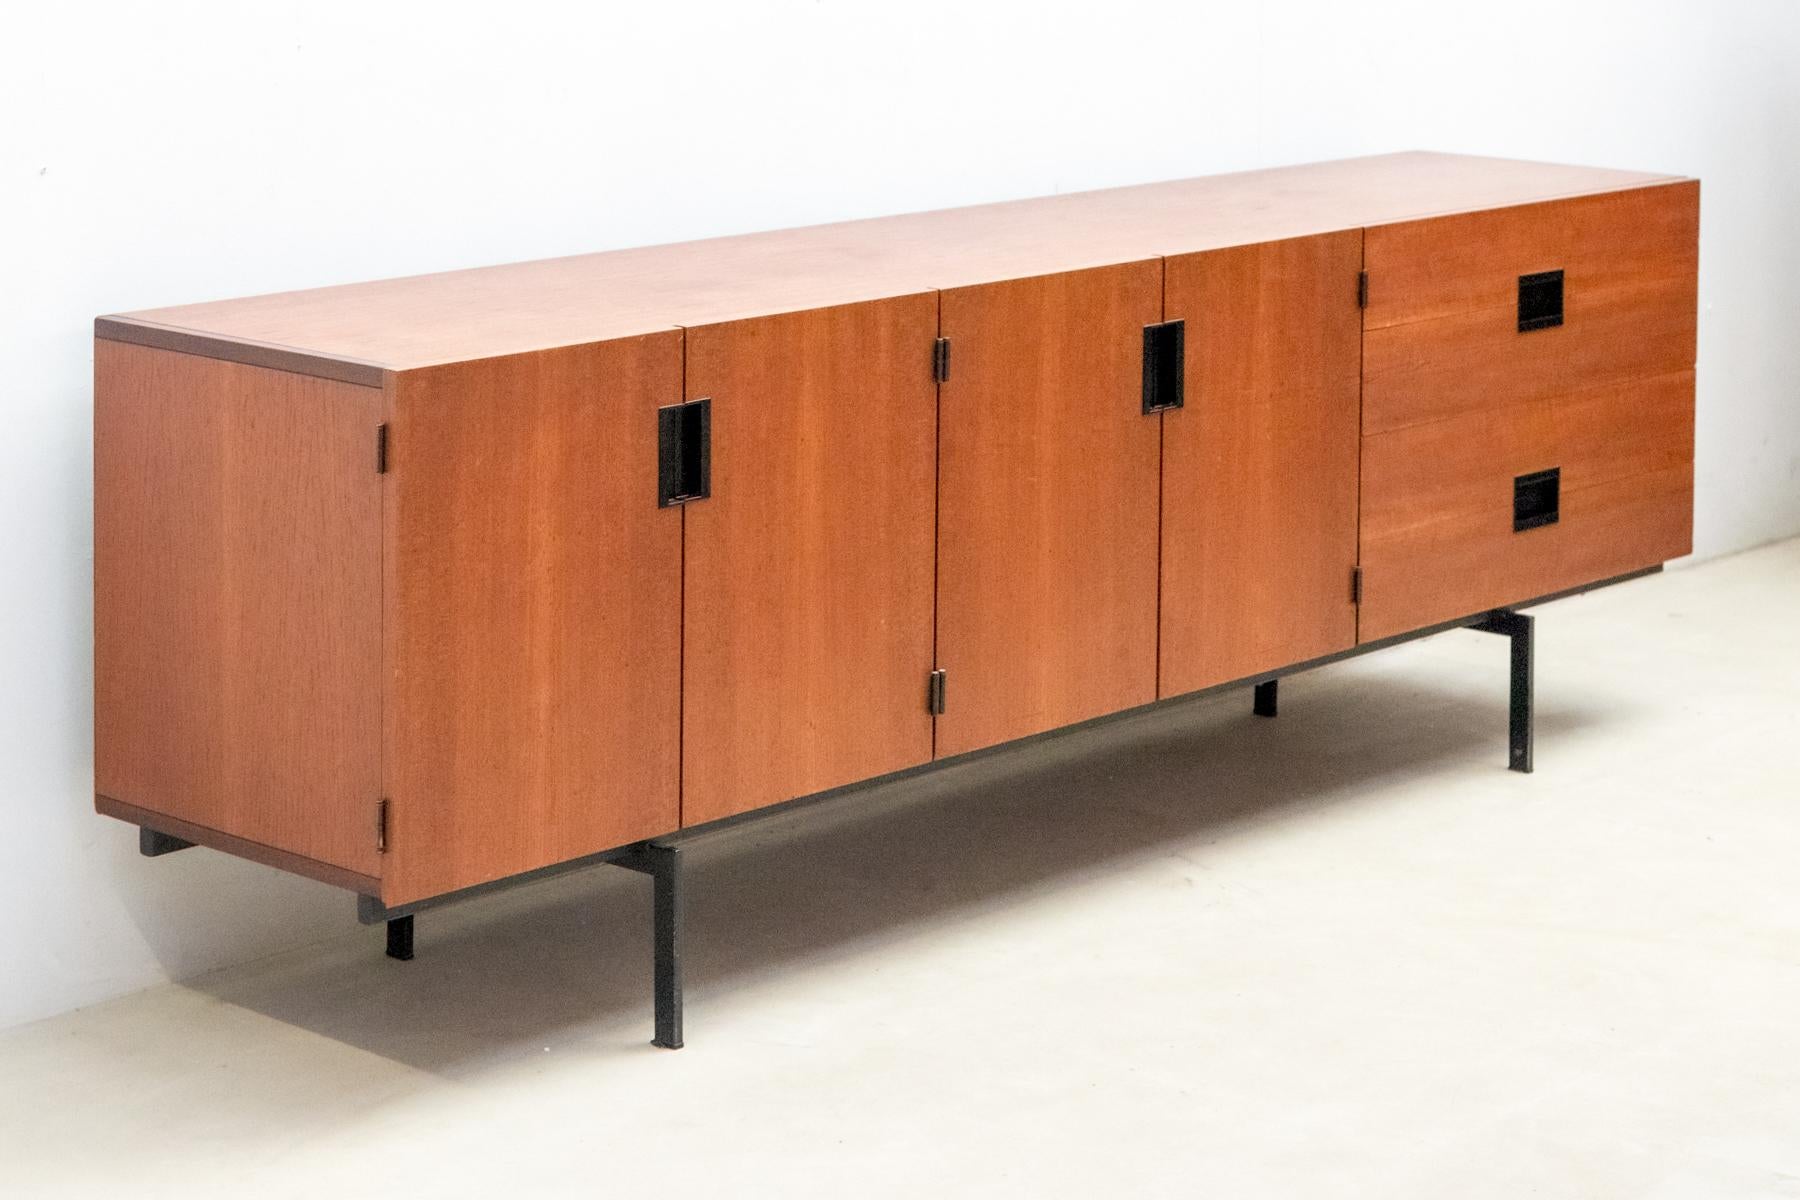 Le buffet minimaliste DU03, conçu par Cees Braakman pour Pastoe en 1958, est un classique du design néerlandais.
 Fabriqué en bois de teck, il est doté d'un élégant cadre en métal laqué noir. 
Le boîtier est orné de poignées en plastique noir de